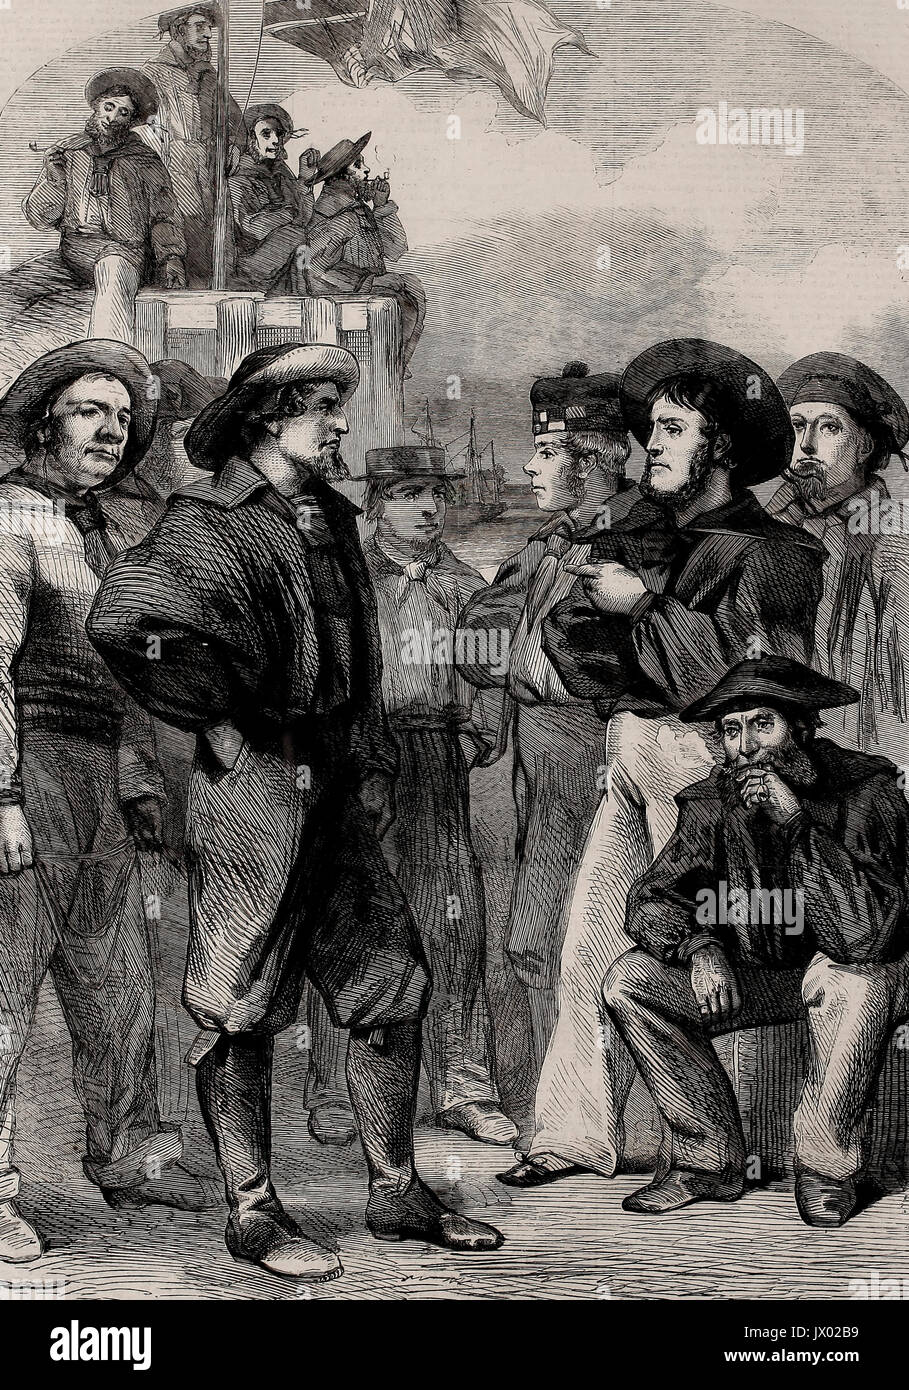 Un groupe de recrues de la Réserve navale, 1860 Banque D'Images